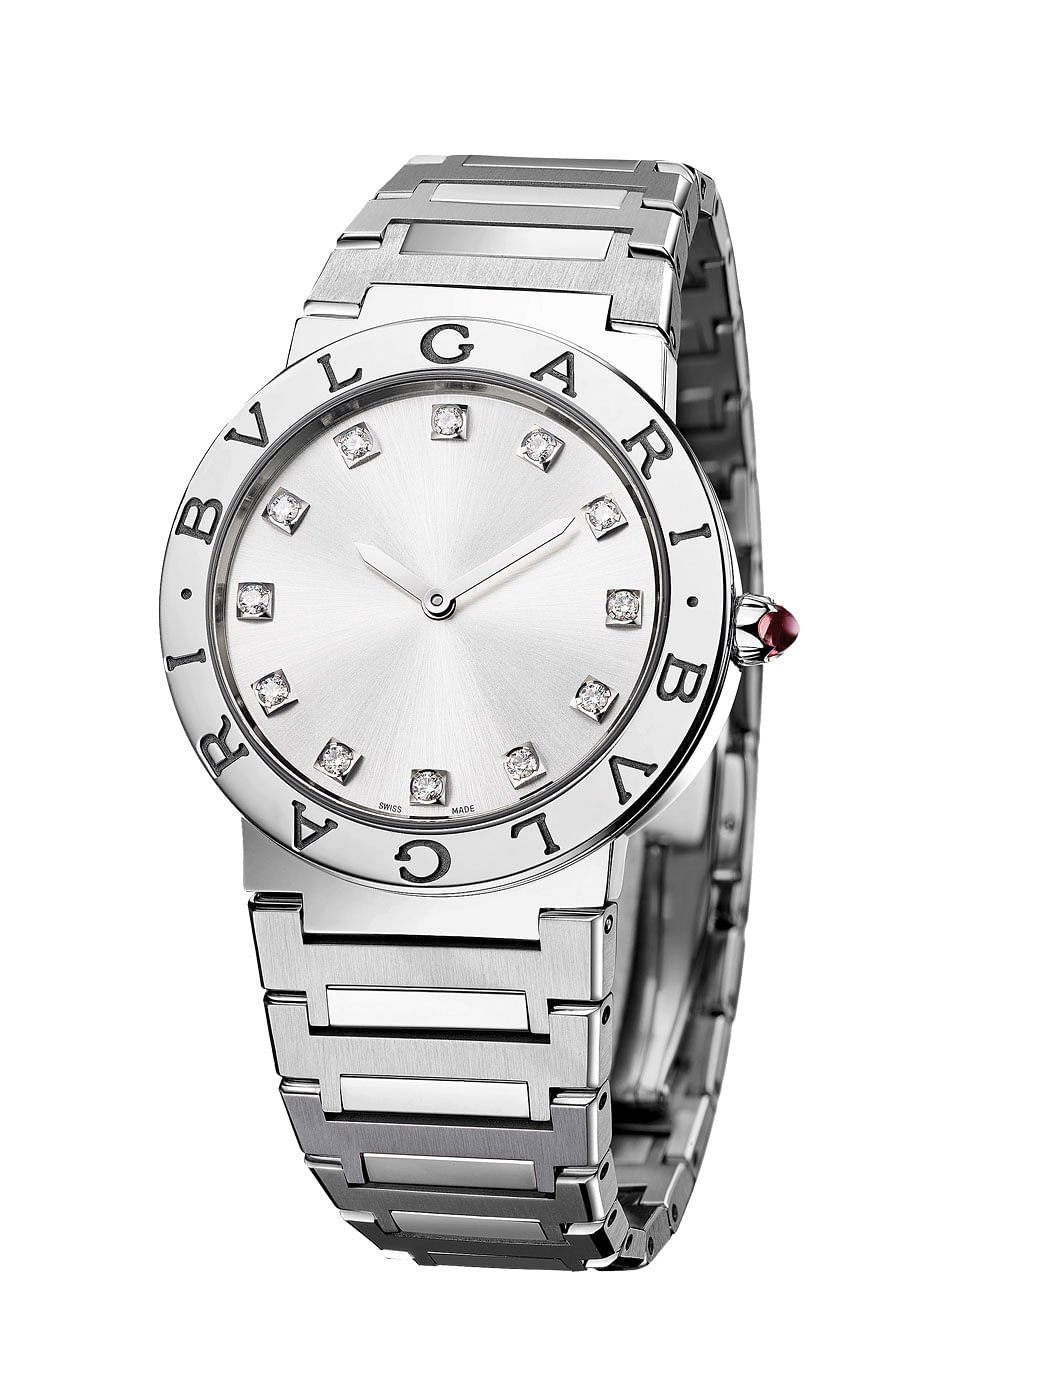 Bvlgari Bvlgari Lady stainless steel watch with diamonds, $6,700, and Bvlgari Bvlgari Lady stainless steel black DLC treatment watch, $5,710, Bvlgari